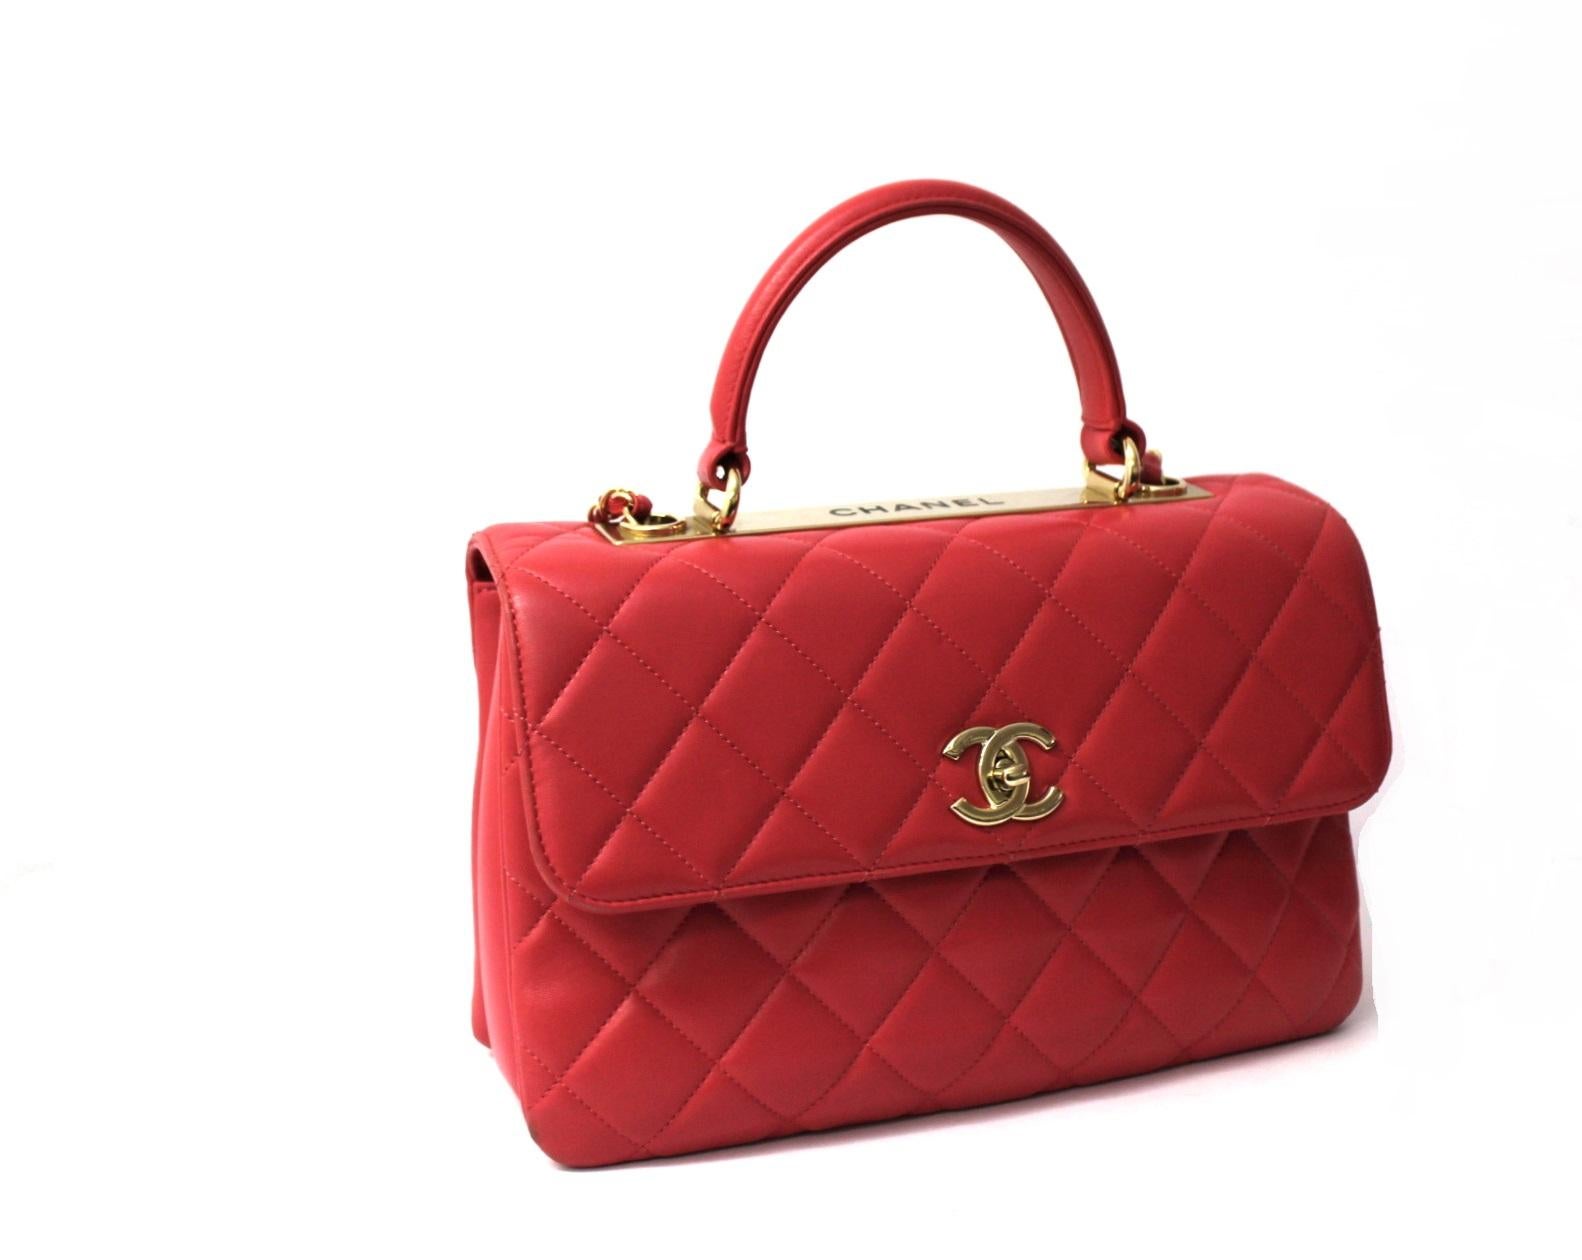 Favolosa borsa di Chanel modello Trendy CC realizzata in morbida pelle rosa con hardware dorati.
Chiusura con logo CC, internamente abbastanza capiente.
Munita di tracolla in pelle e catena, e manico superiore in pelle.
La borsa si presenta in buone